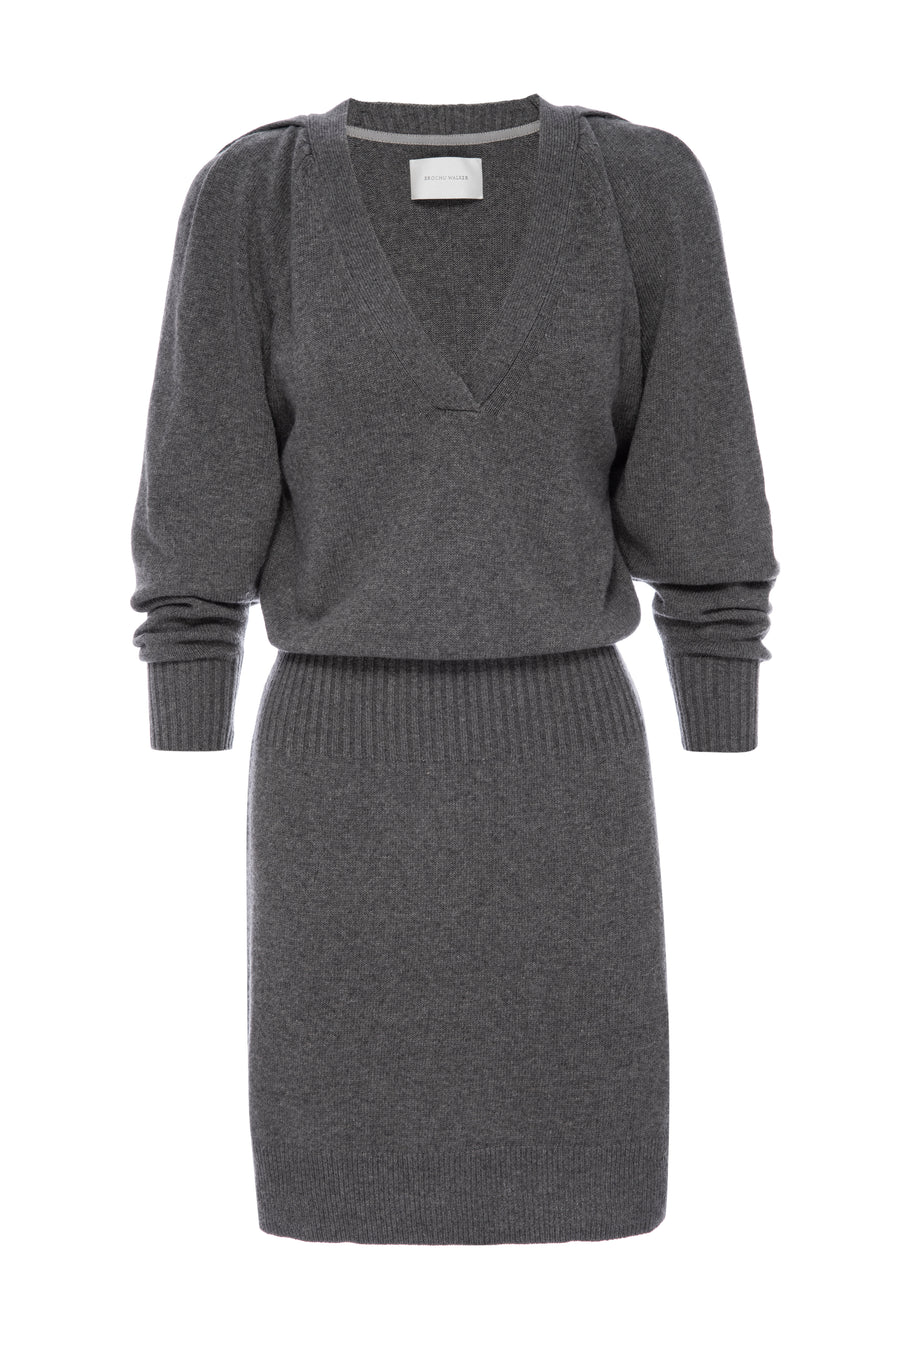 Idris mini grey sweater dress flat view